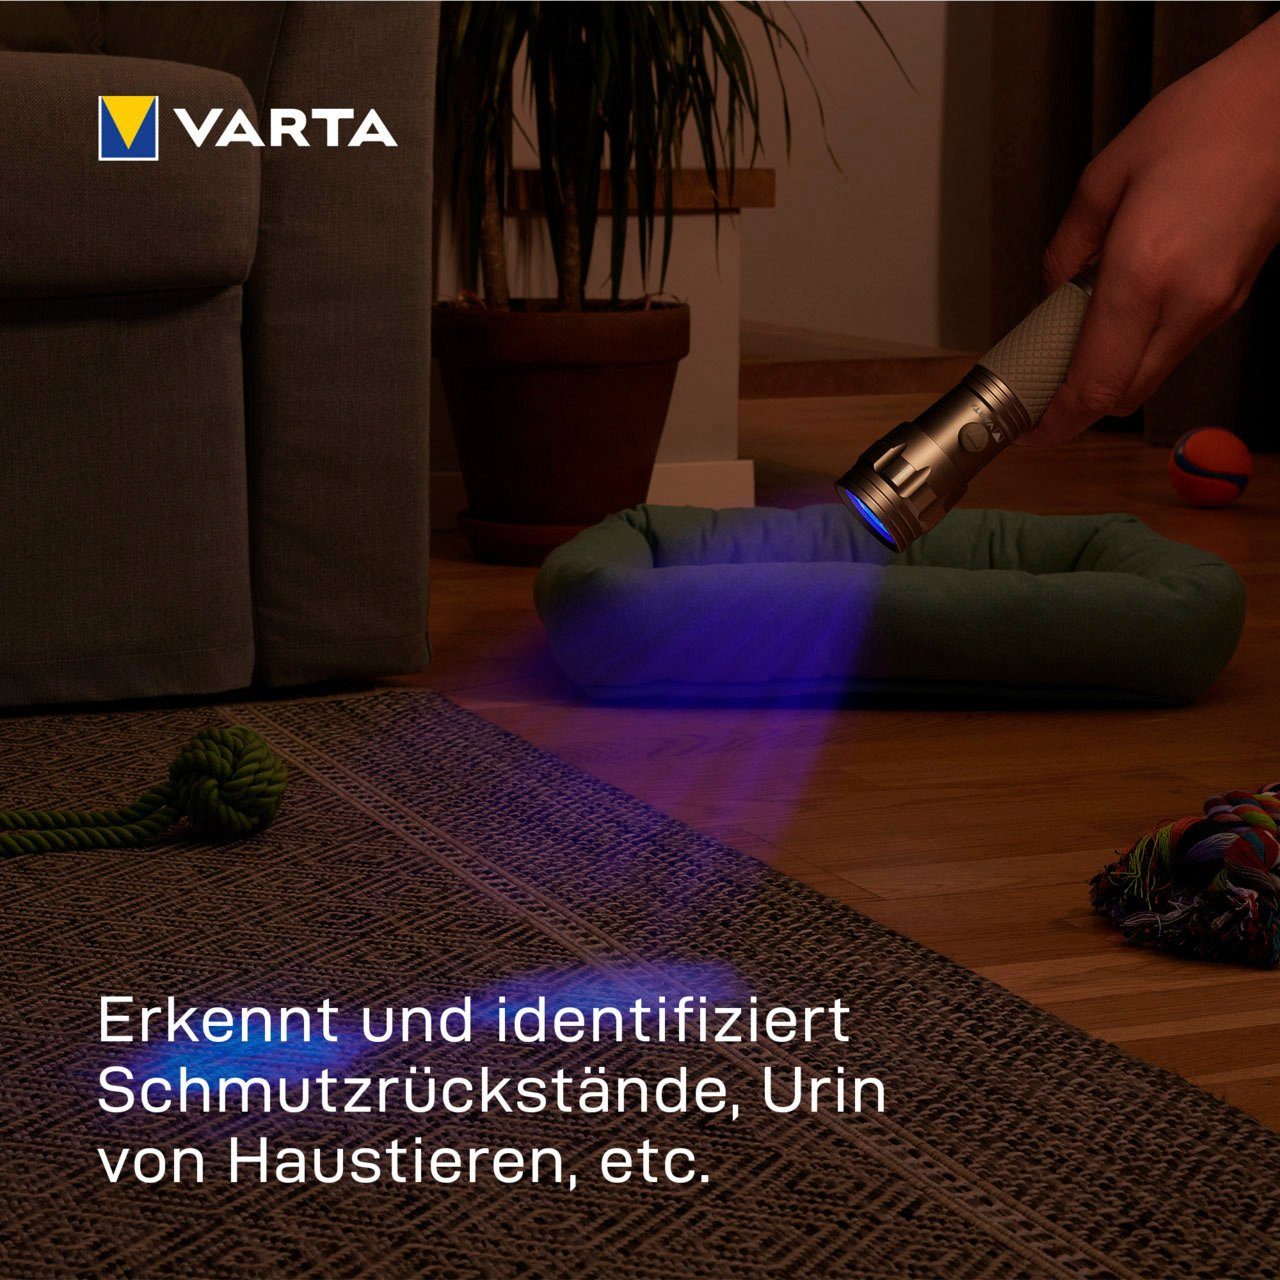 VARTA Taschenlampe UV Licht (Set), macht sichtbar Schwarzlicht Hygienehilfe mit Leuchte Unsichtbares